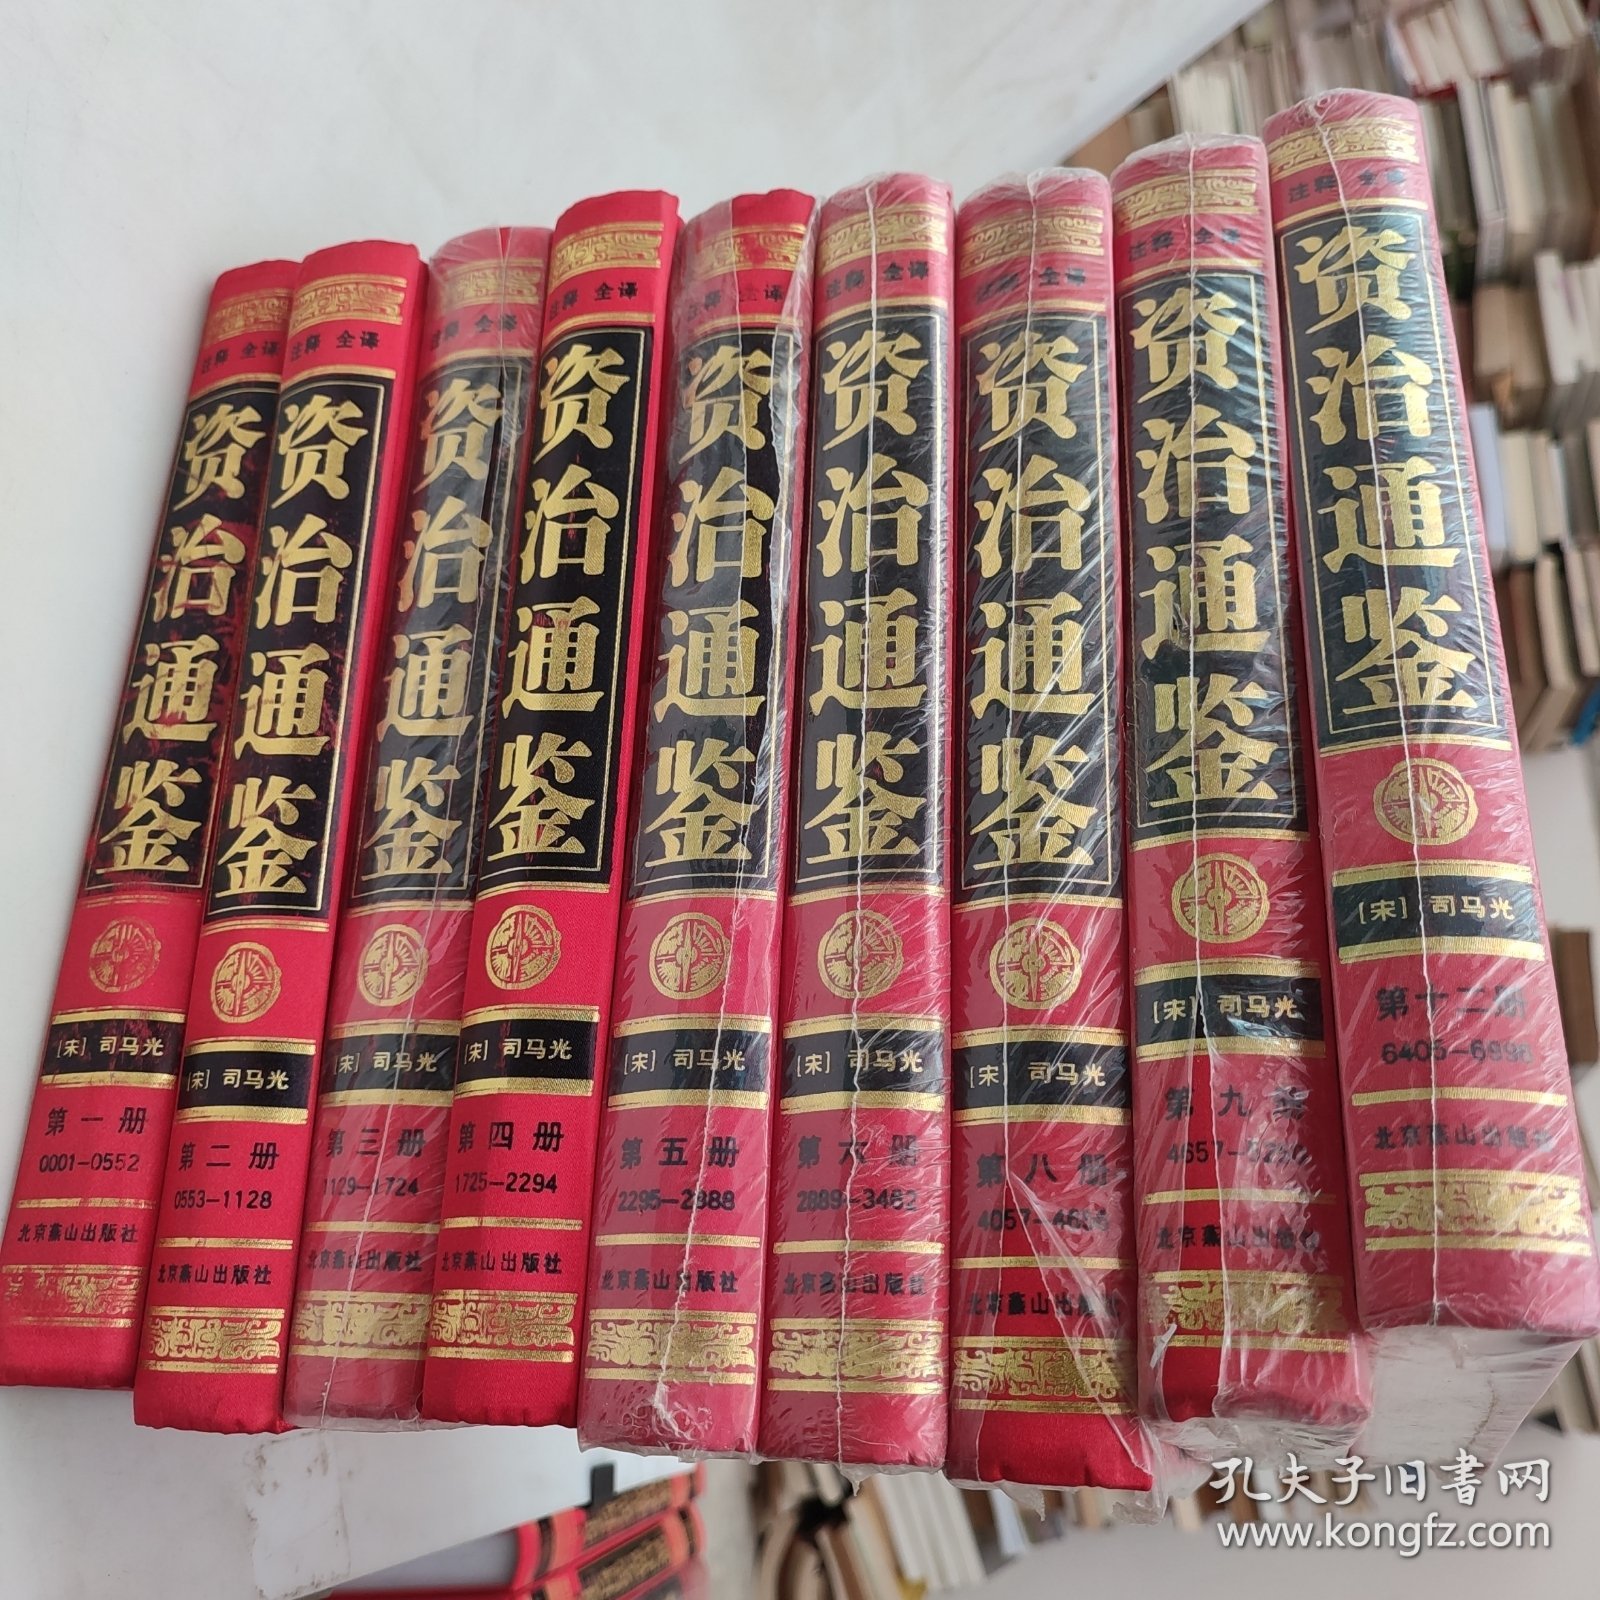 资治通鉴：无中国古典文化珍藏书系。1234568912,,9本合售。